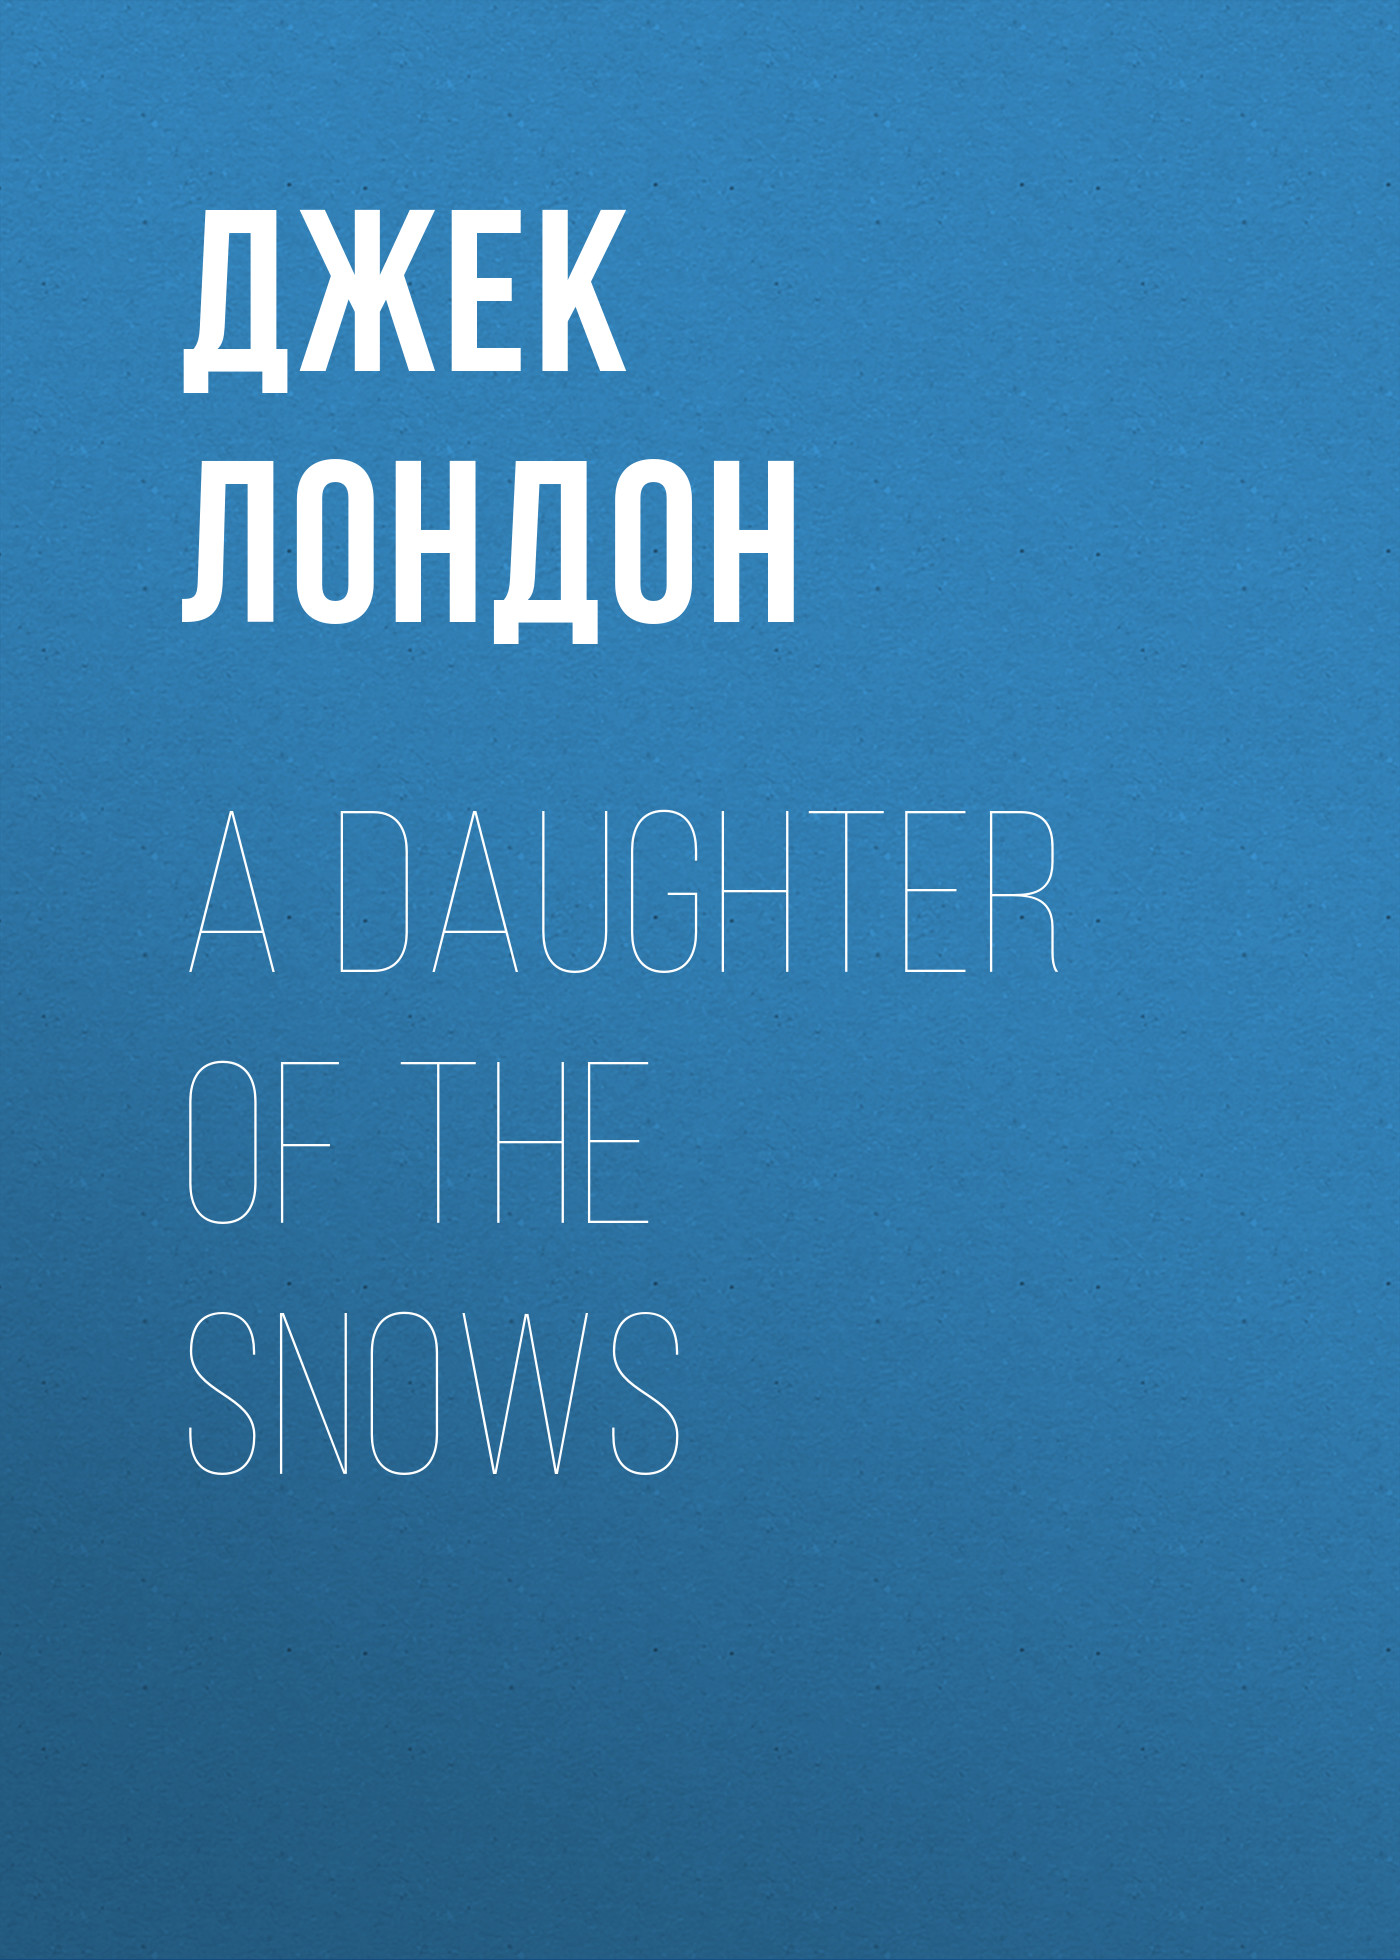 Книга A Daughter of the Snows из серии , созданная Джек Лондон, может относится к жанру Зарубежная старинная литература, Зарубежная классика. Стоимость электронной книги A Daughter of the Snows с идентификатором 25291710 составляет 0 руб.